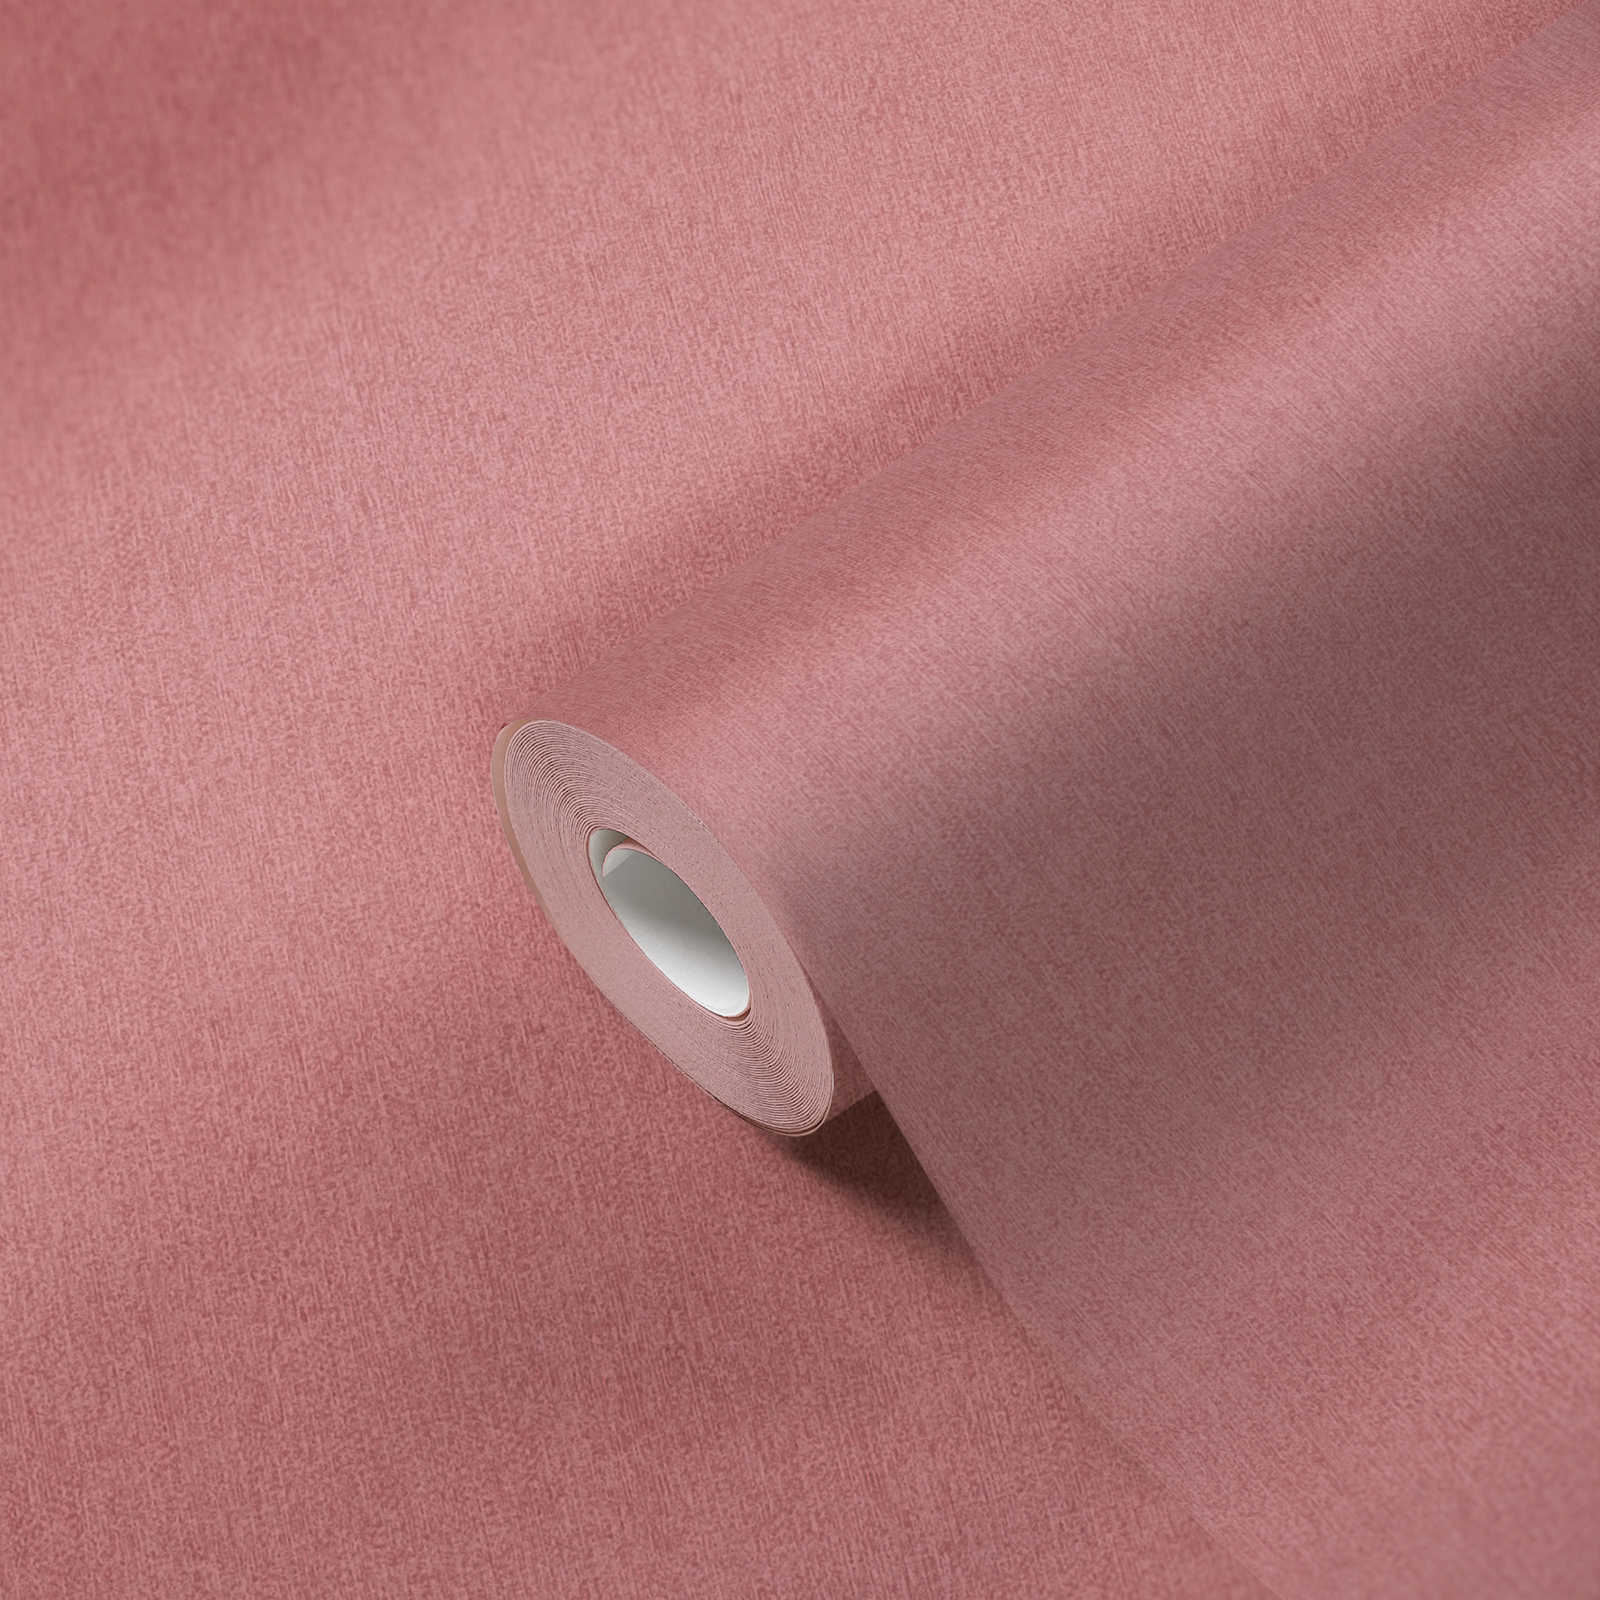             Papel pintado no tejido liso y mate con estructura - rosa
        